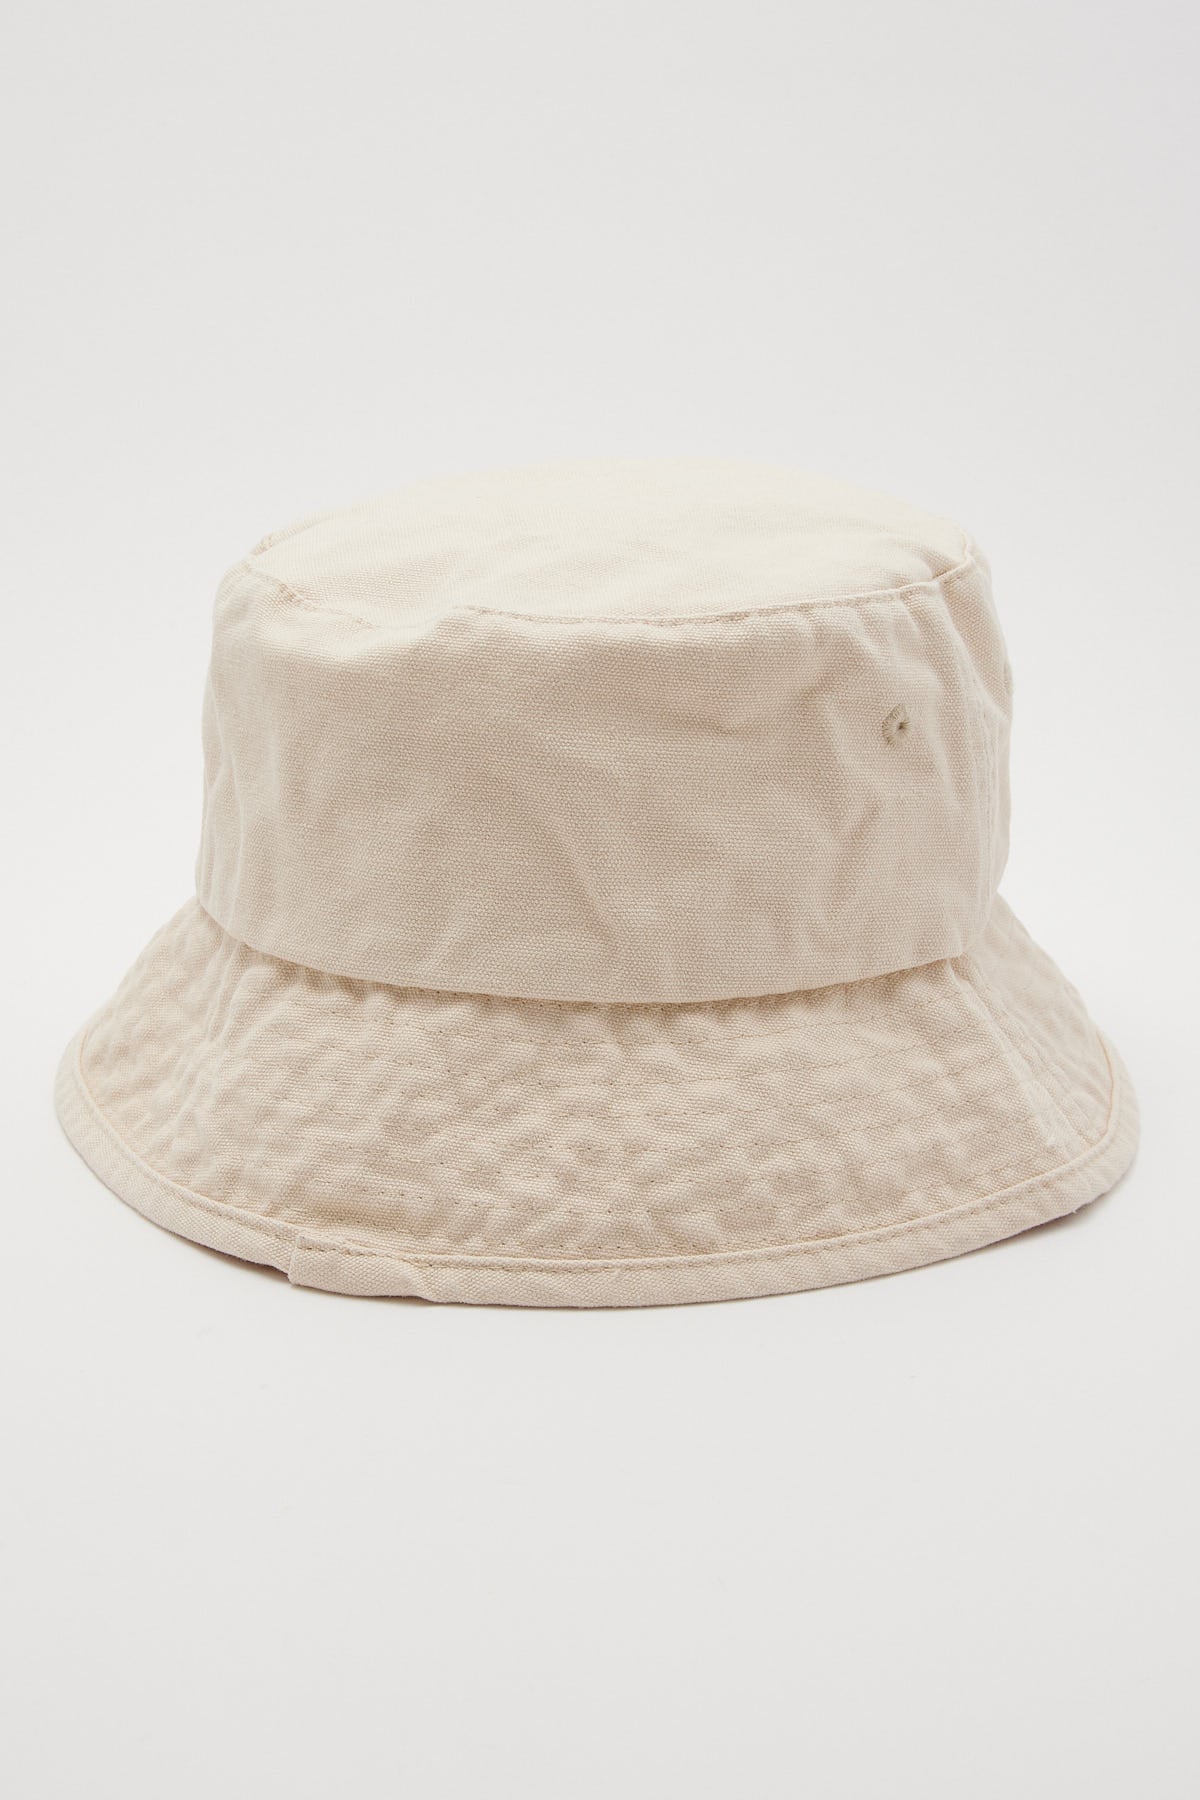 Thrills Minimal Thrills Bucket Hat Heritage White